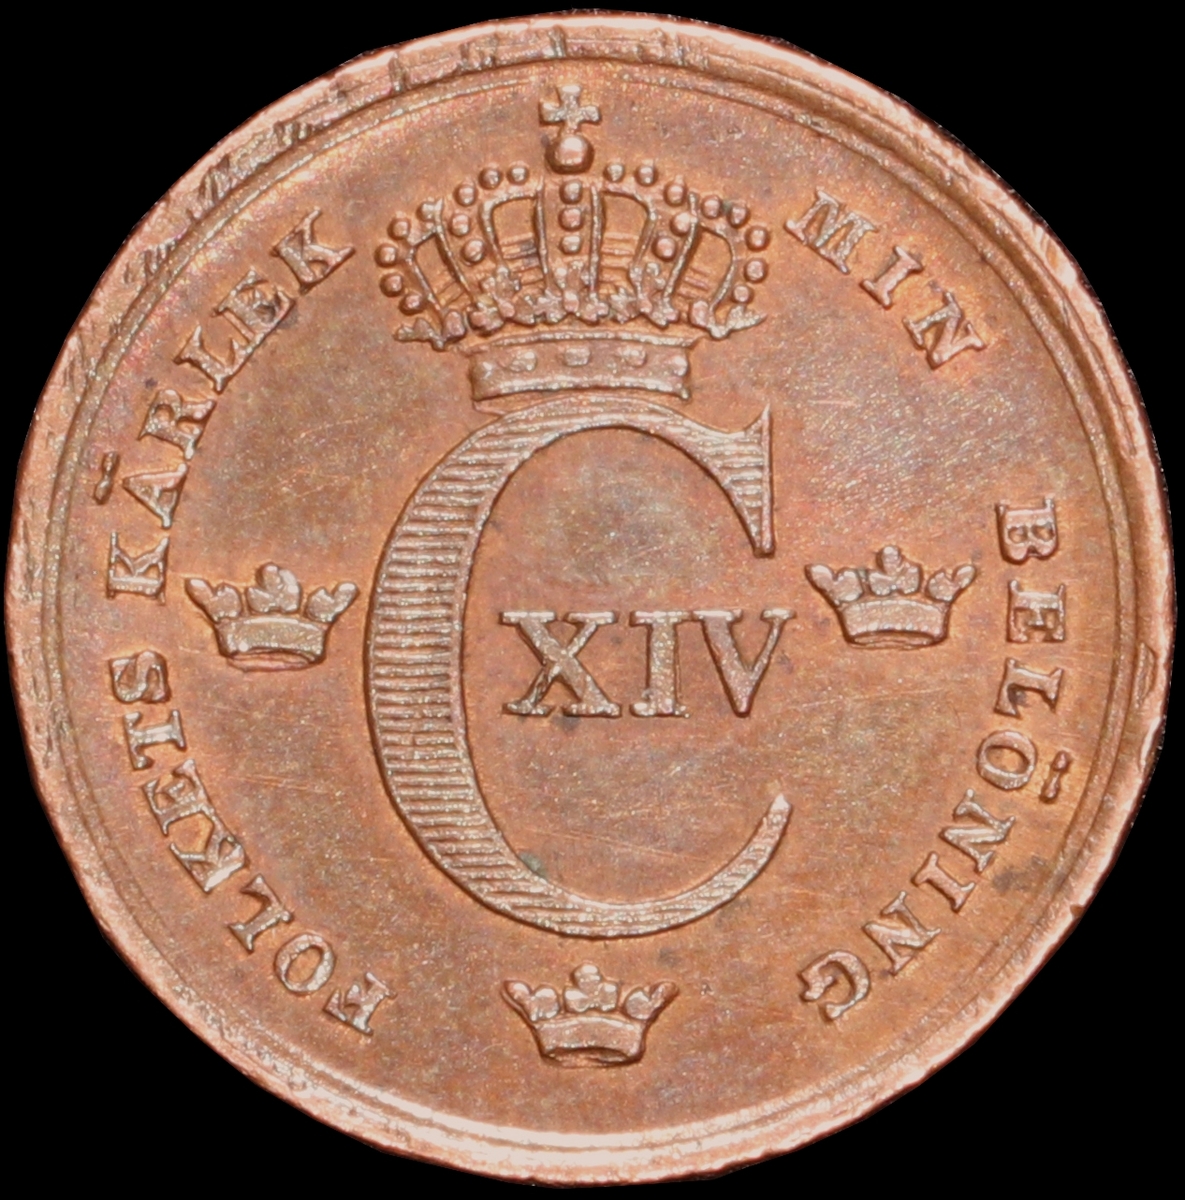 Mynt med valören 1/6 skilling banco. Åtsidan har Kung Karl XIV Johans monogram, tre kronor kungens valspråk. Frånsidan visar valören, två korslagda pilar samt en växtkrans.